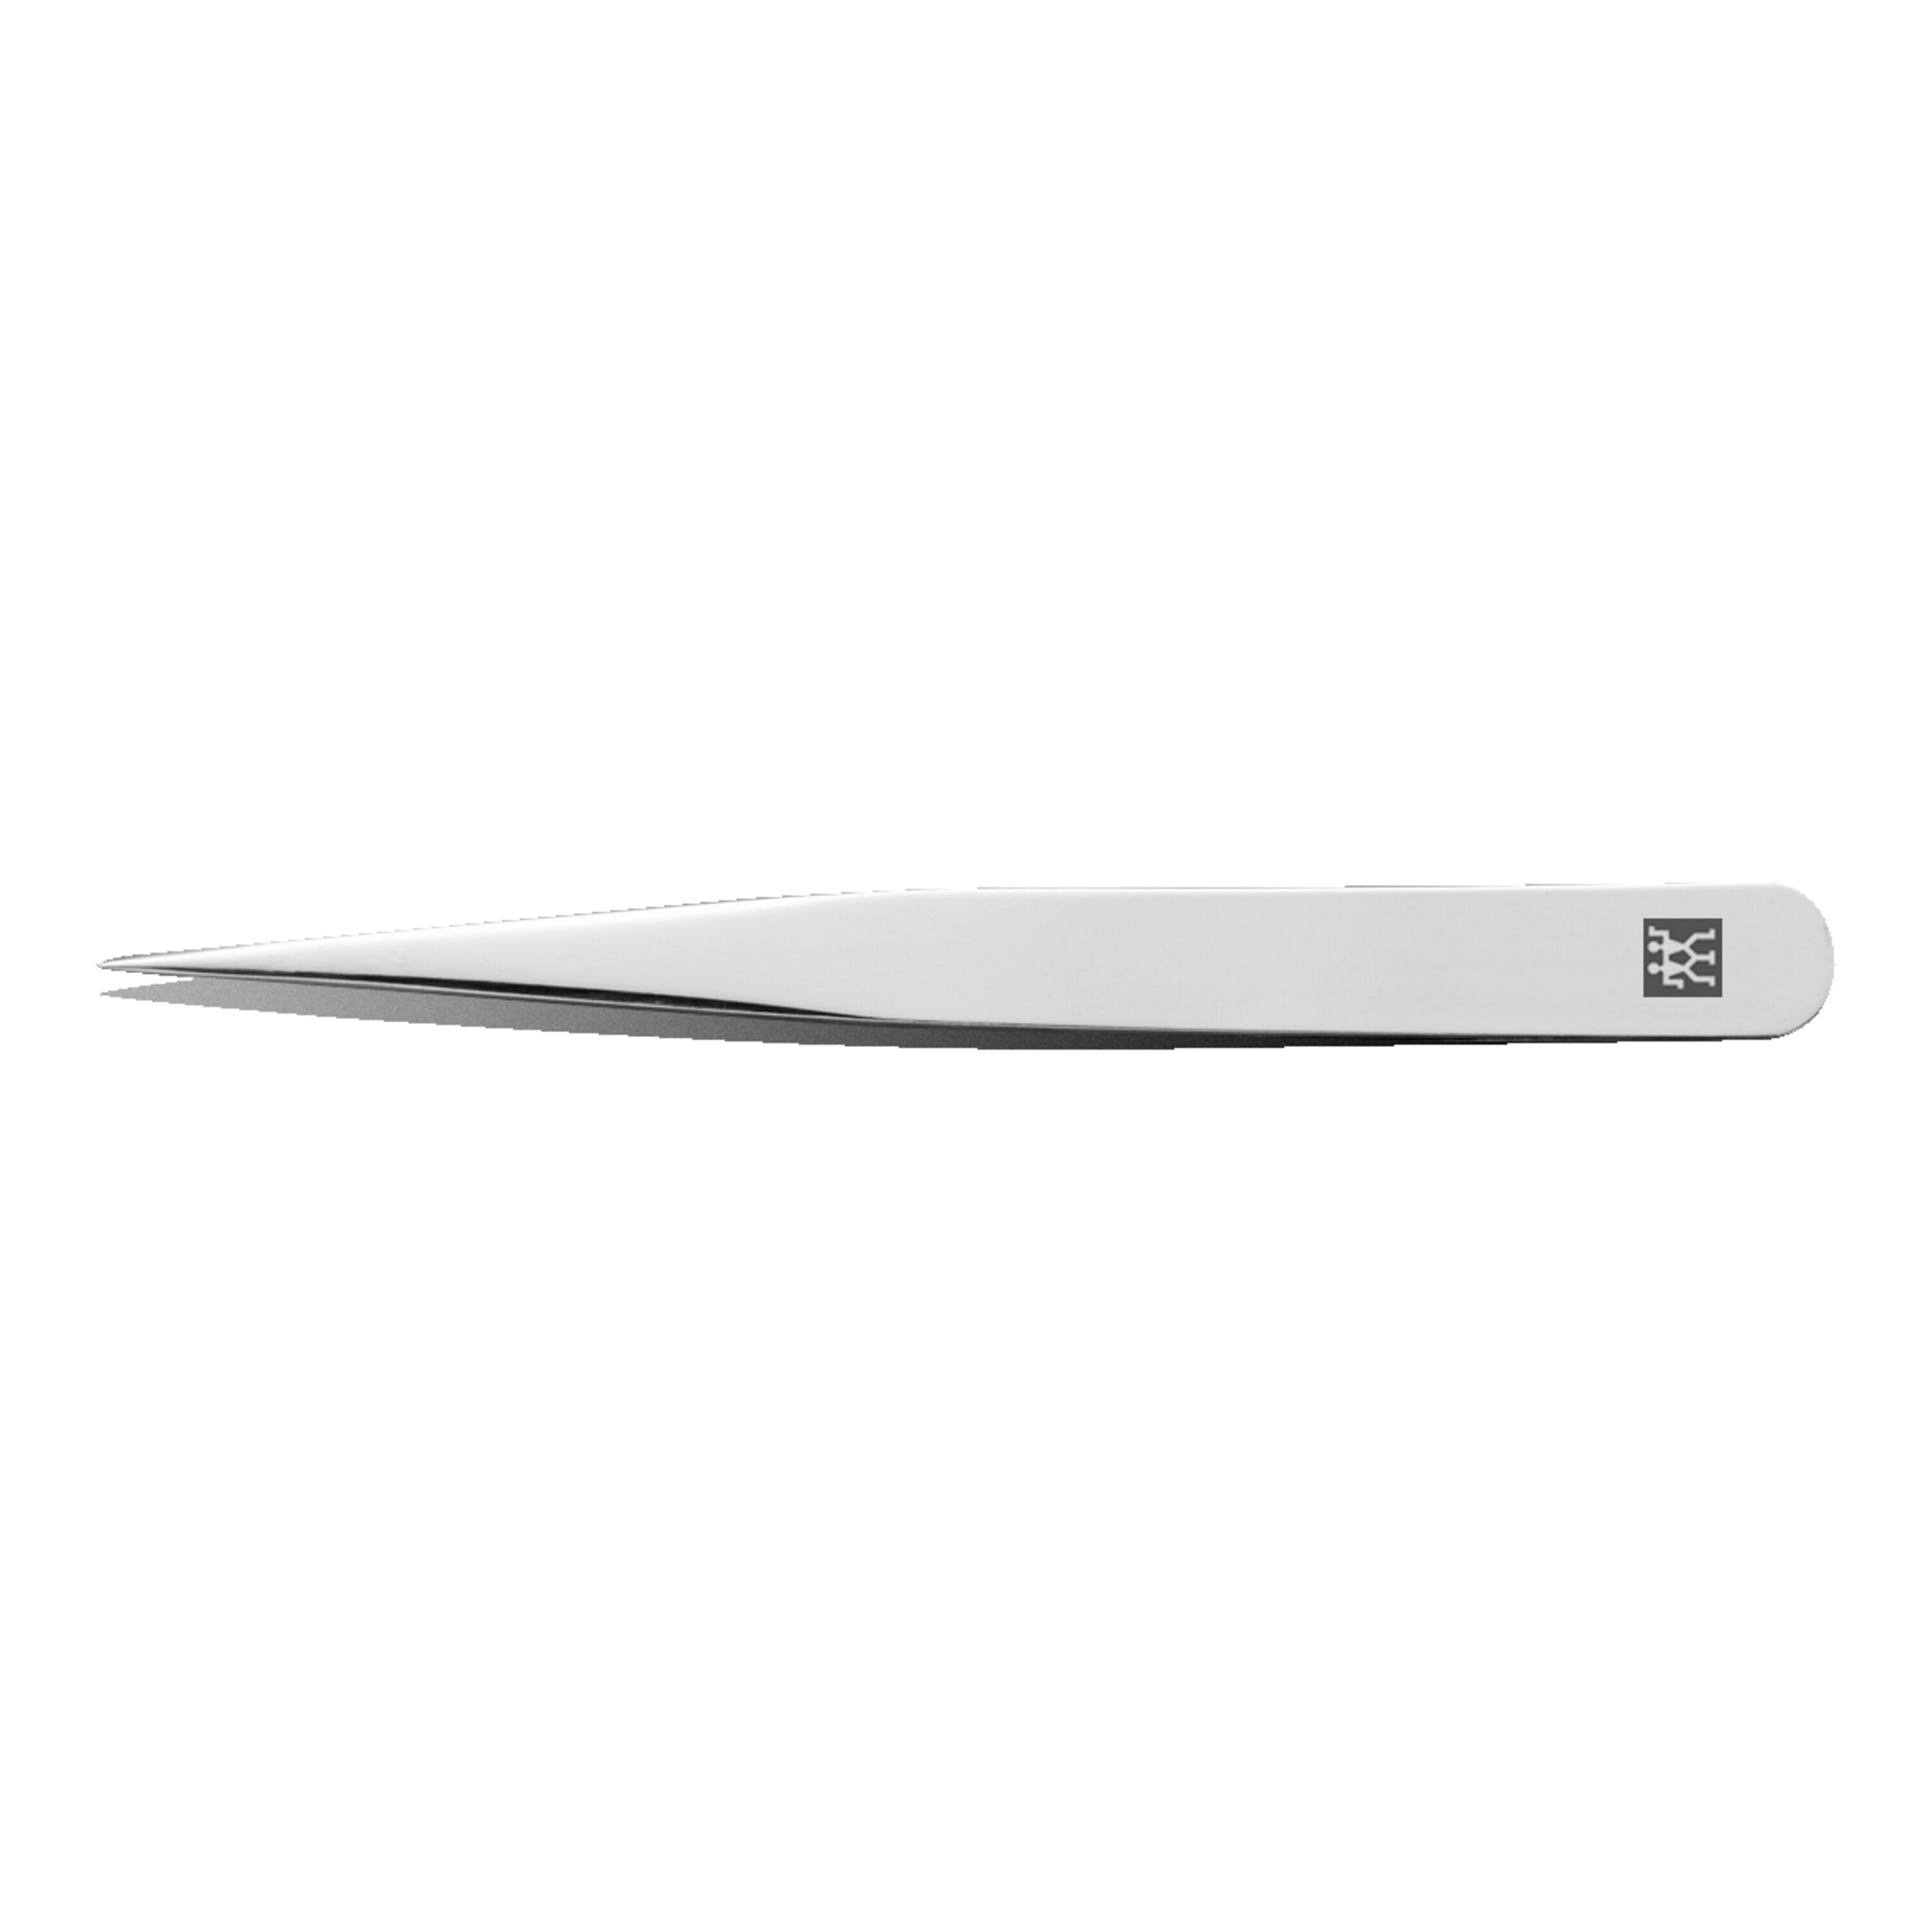 Sharp Pointed Tweezers – Excel Blades